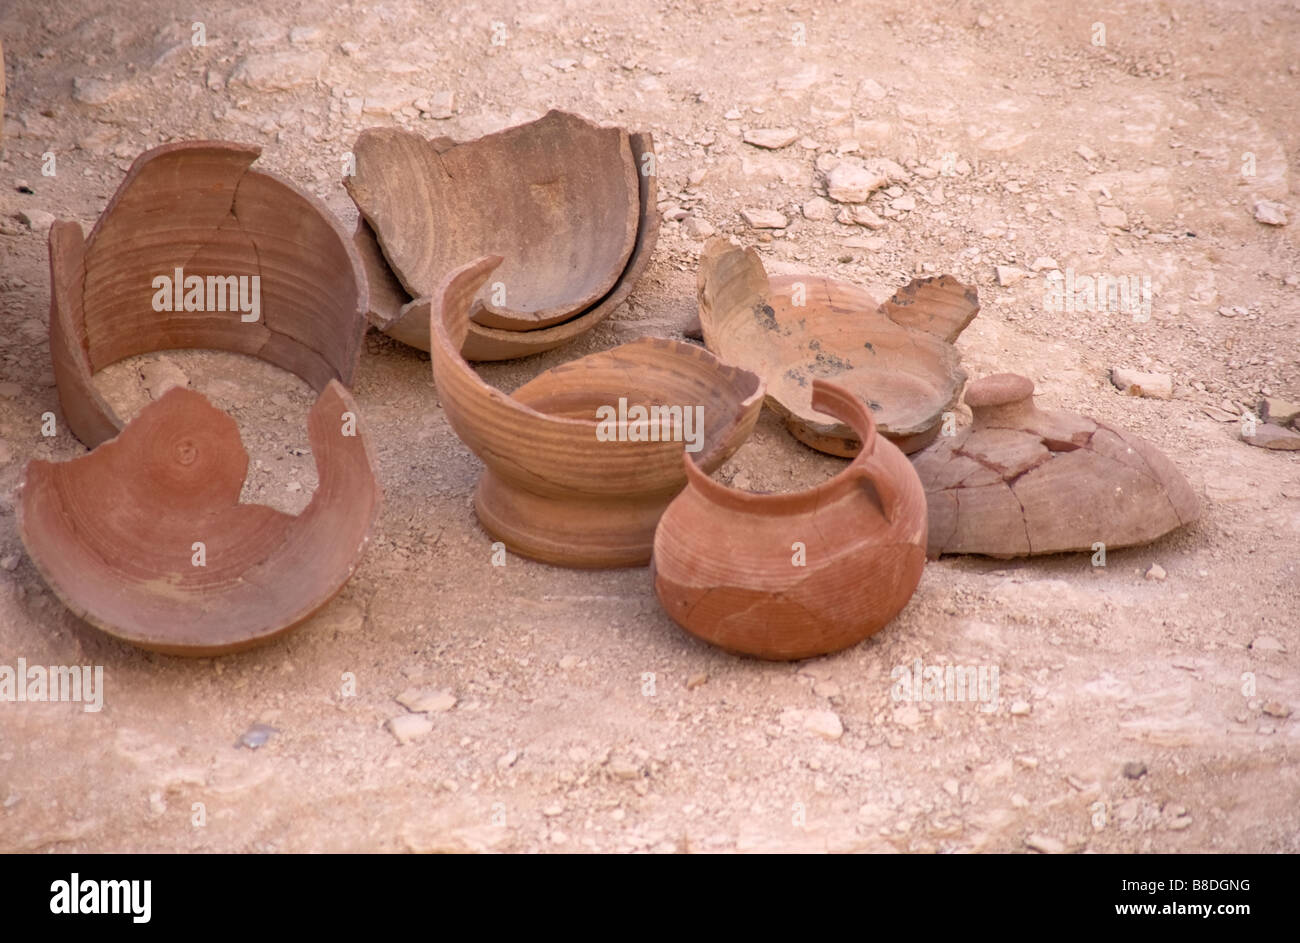 Broken excavated pots Stock Photo